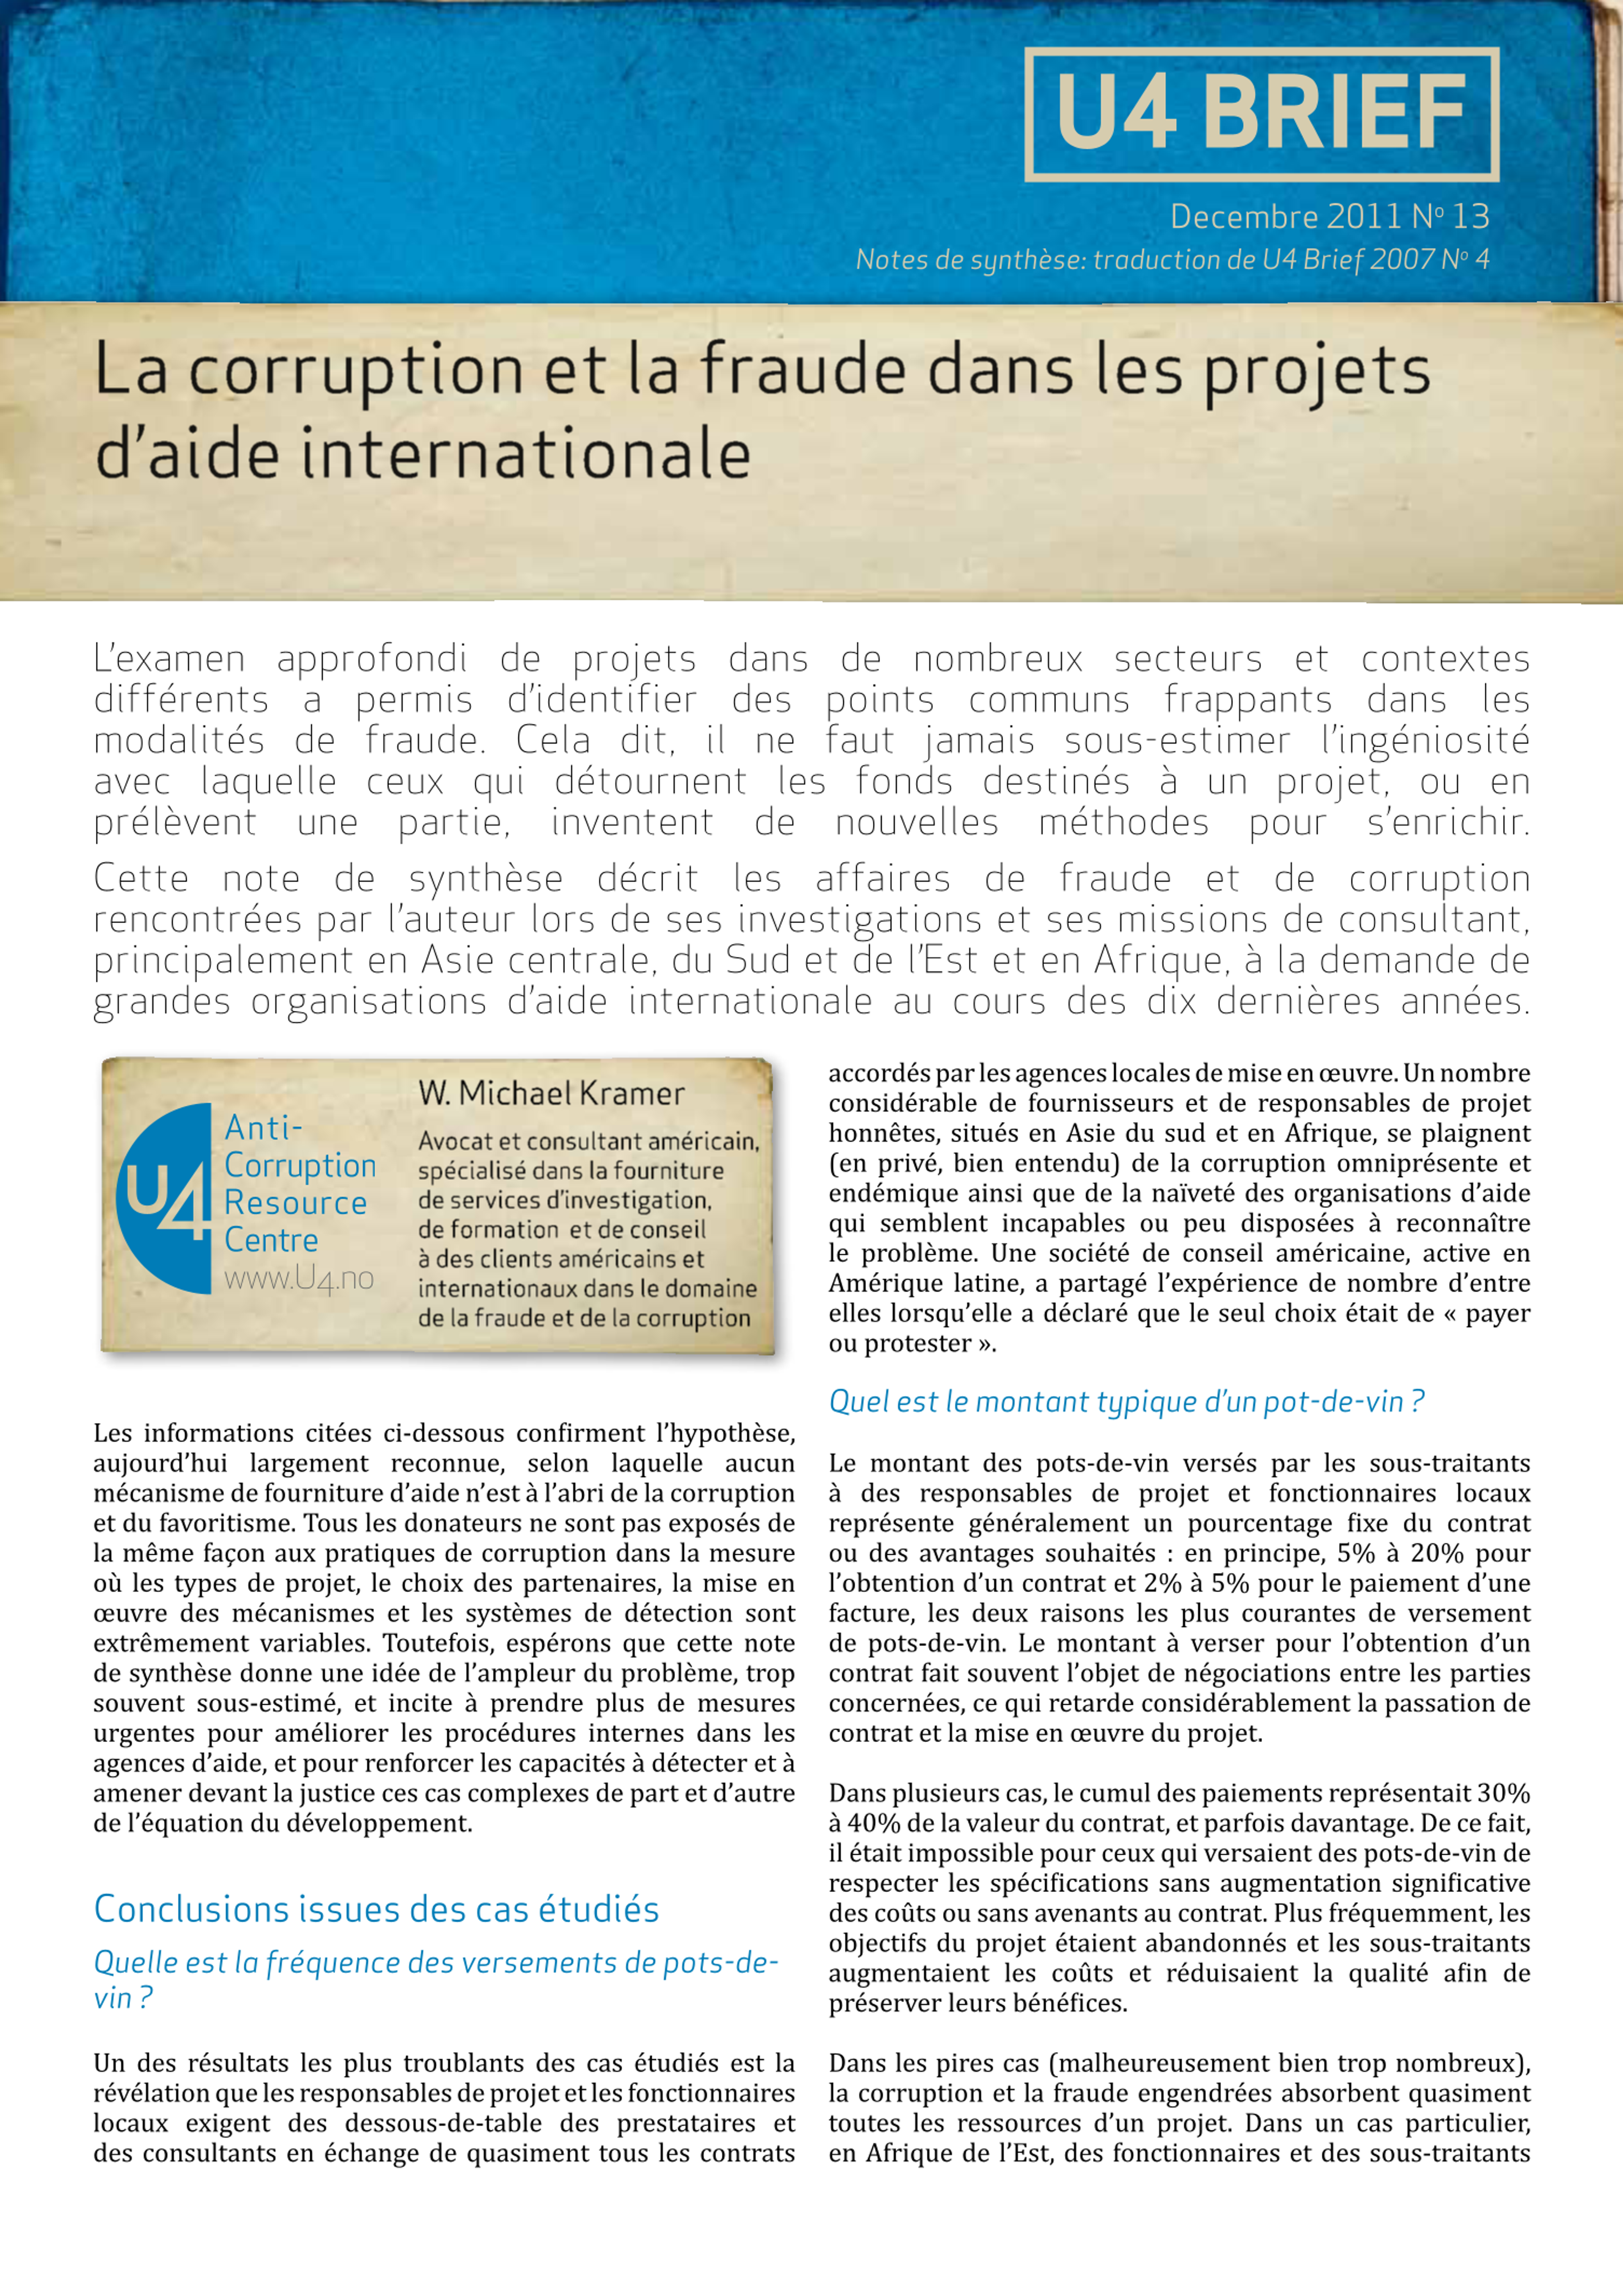 La corruption et la fraude dans les projets d'aide internationale